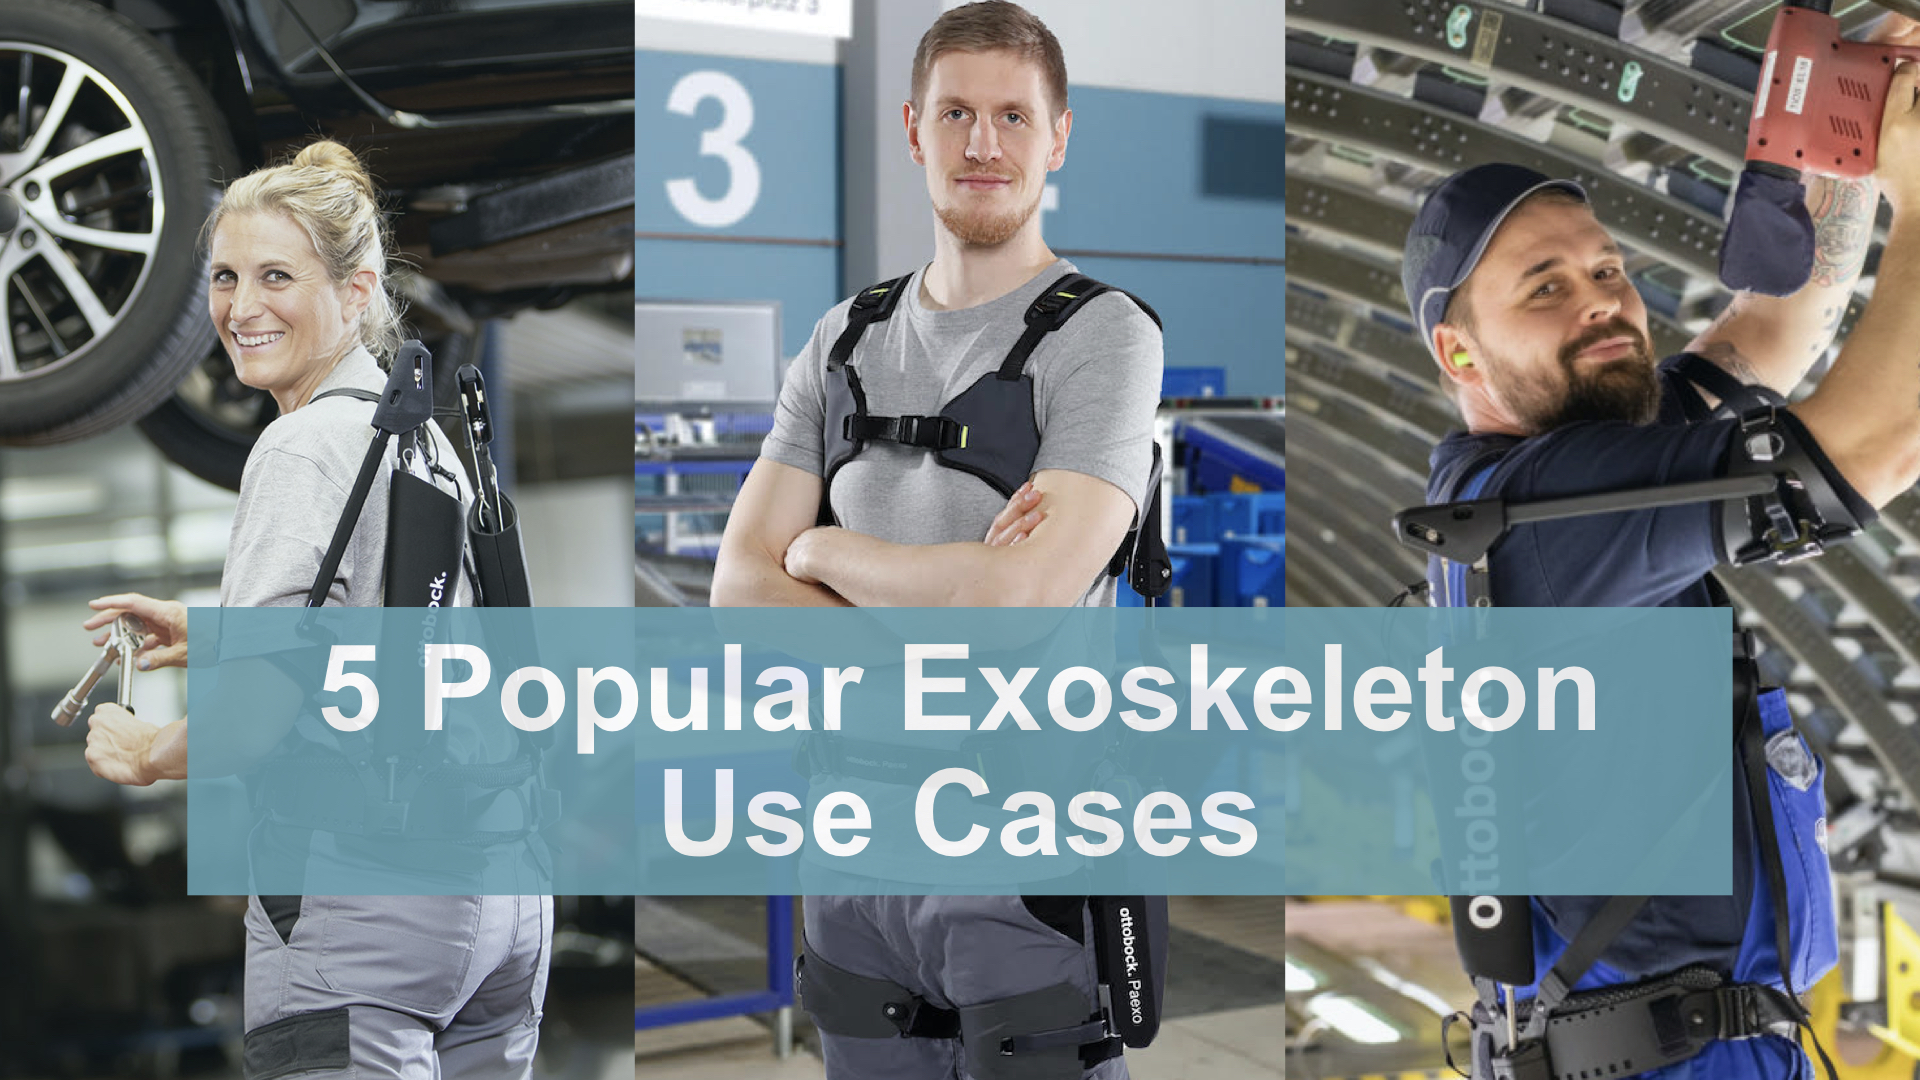 5 Exoskeleton Use Cases